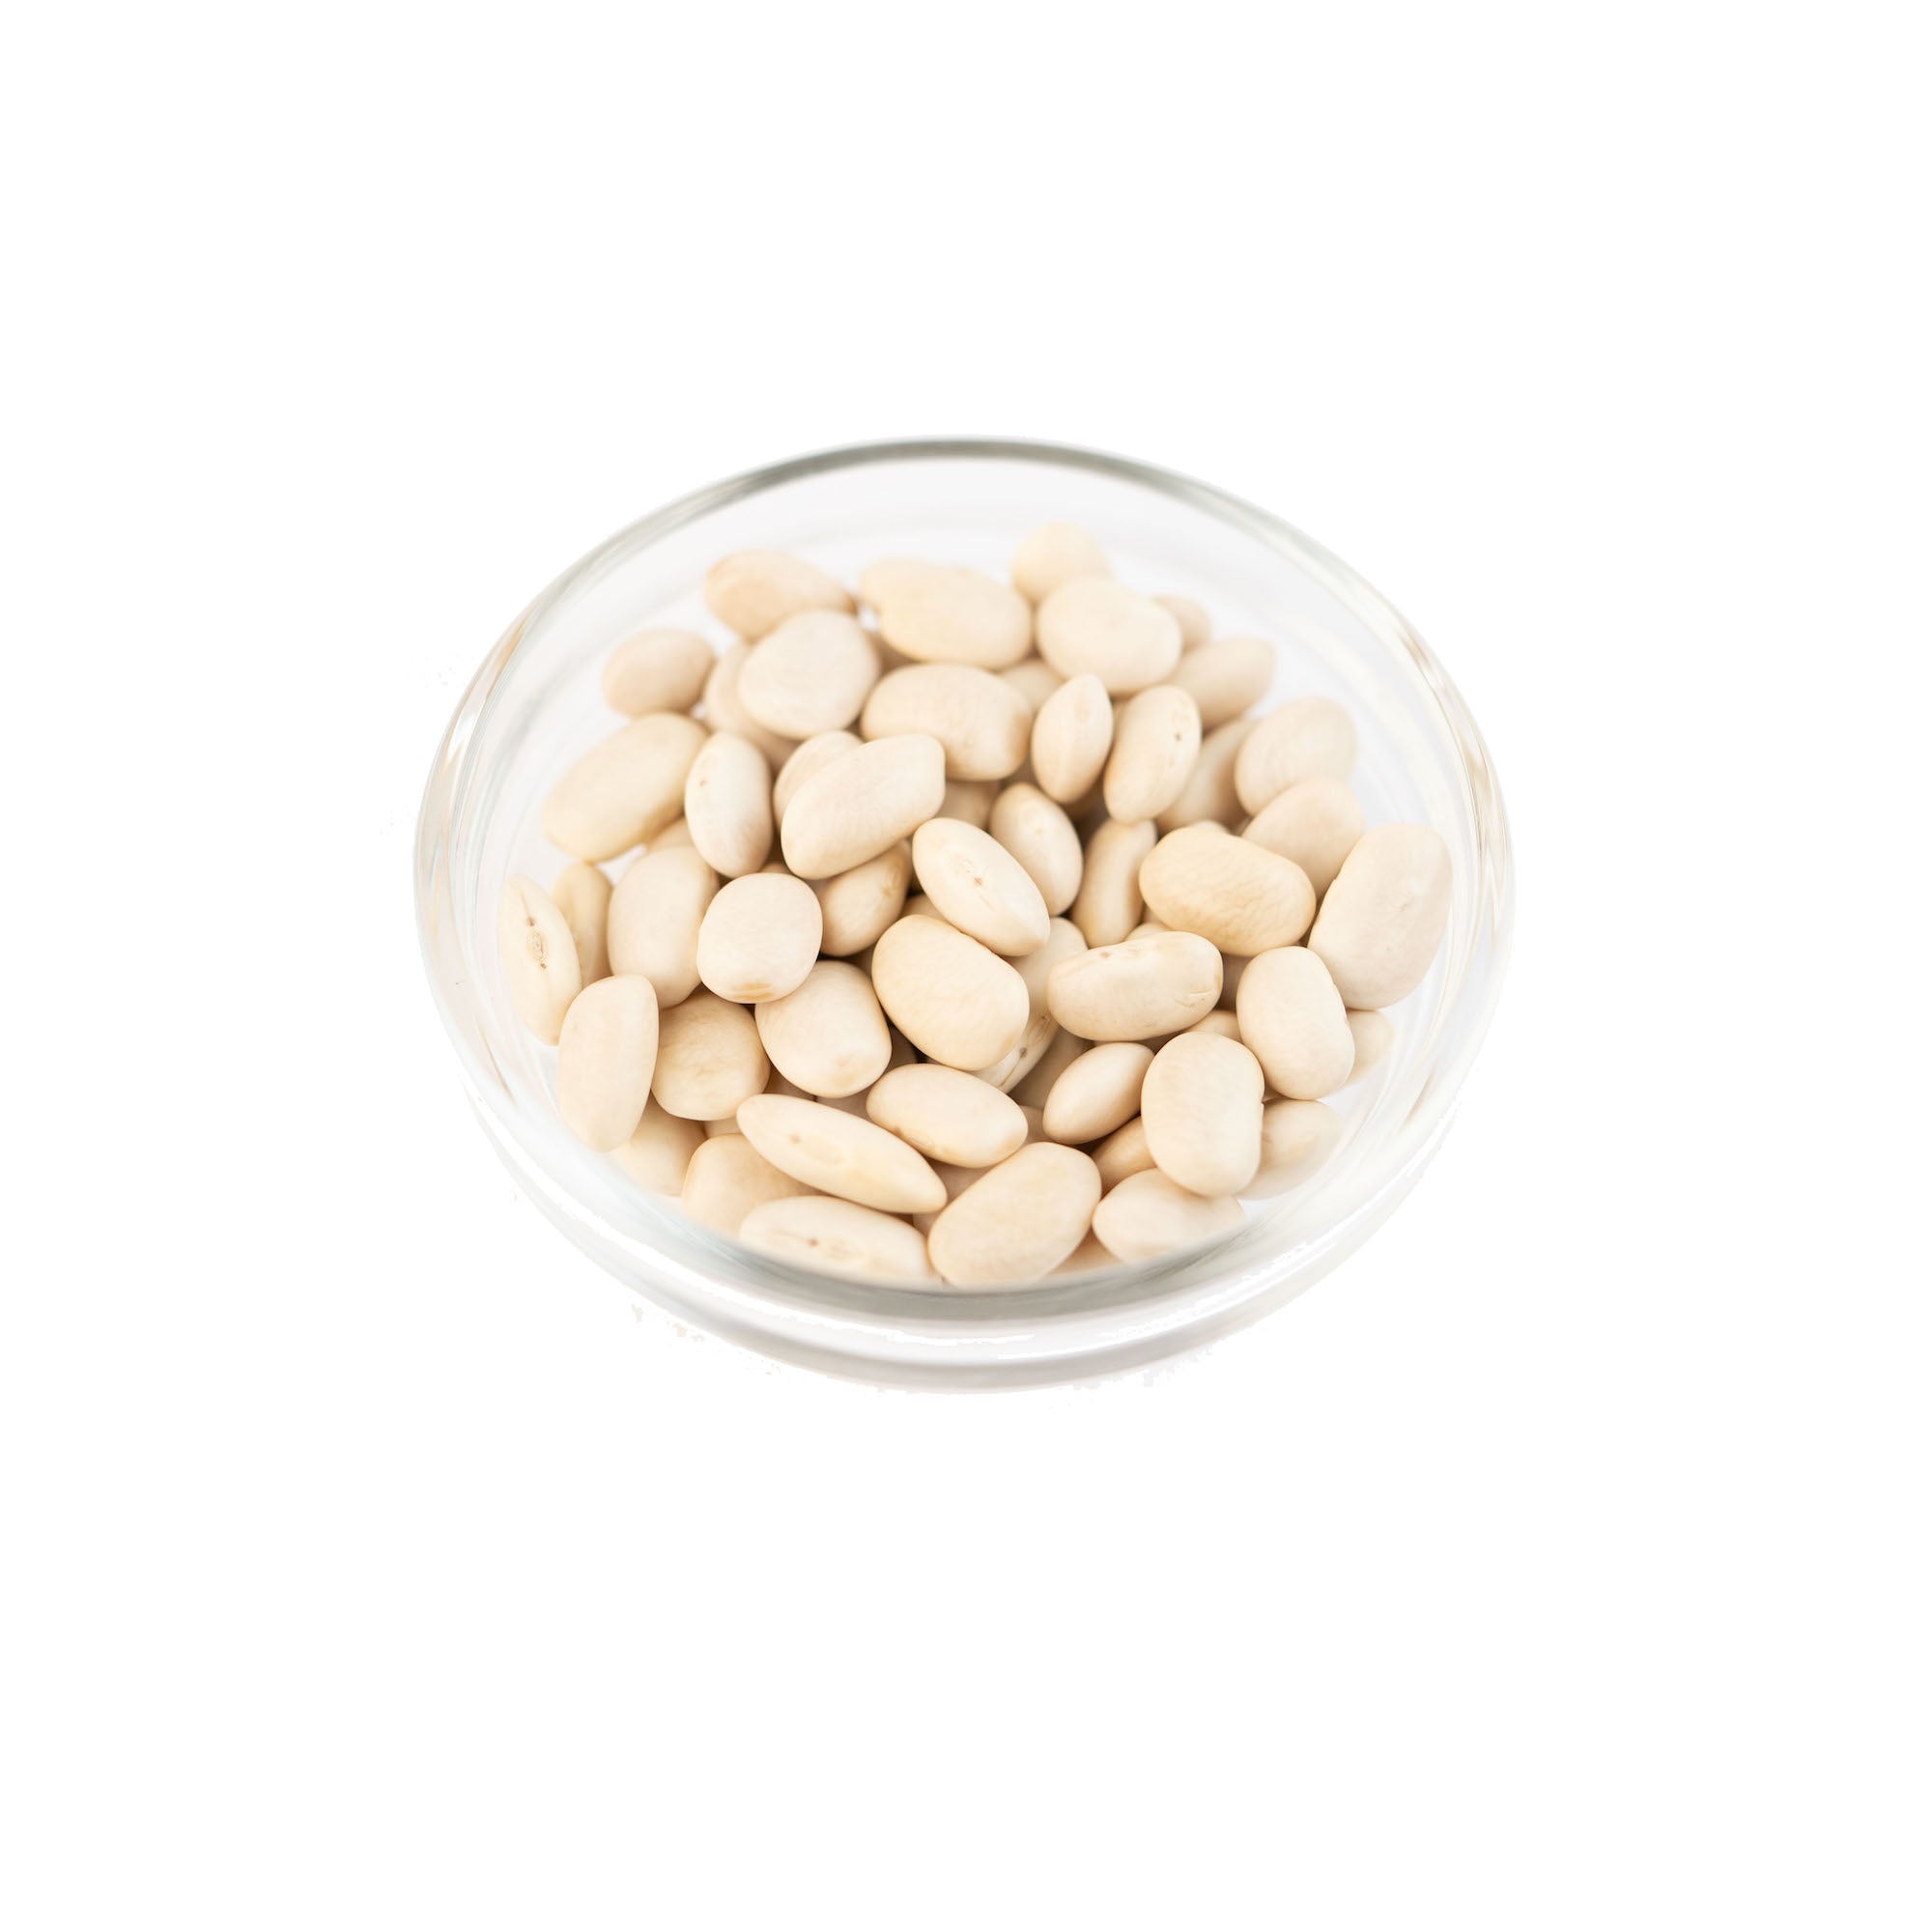 GUSTA SUPPLIES Lingot Beans